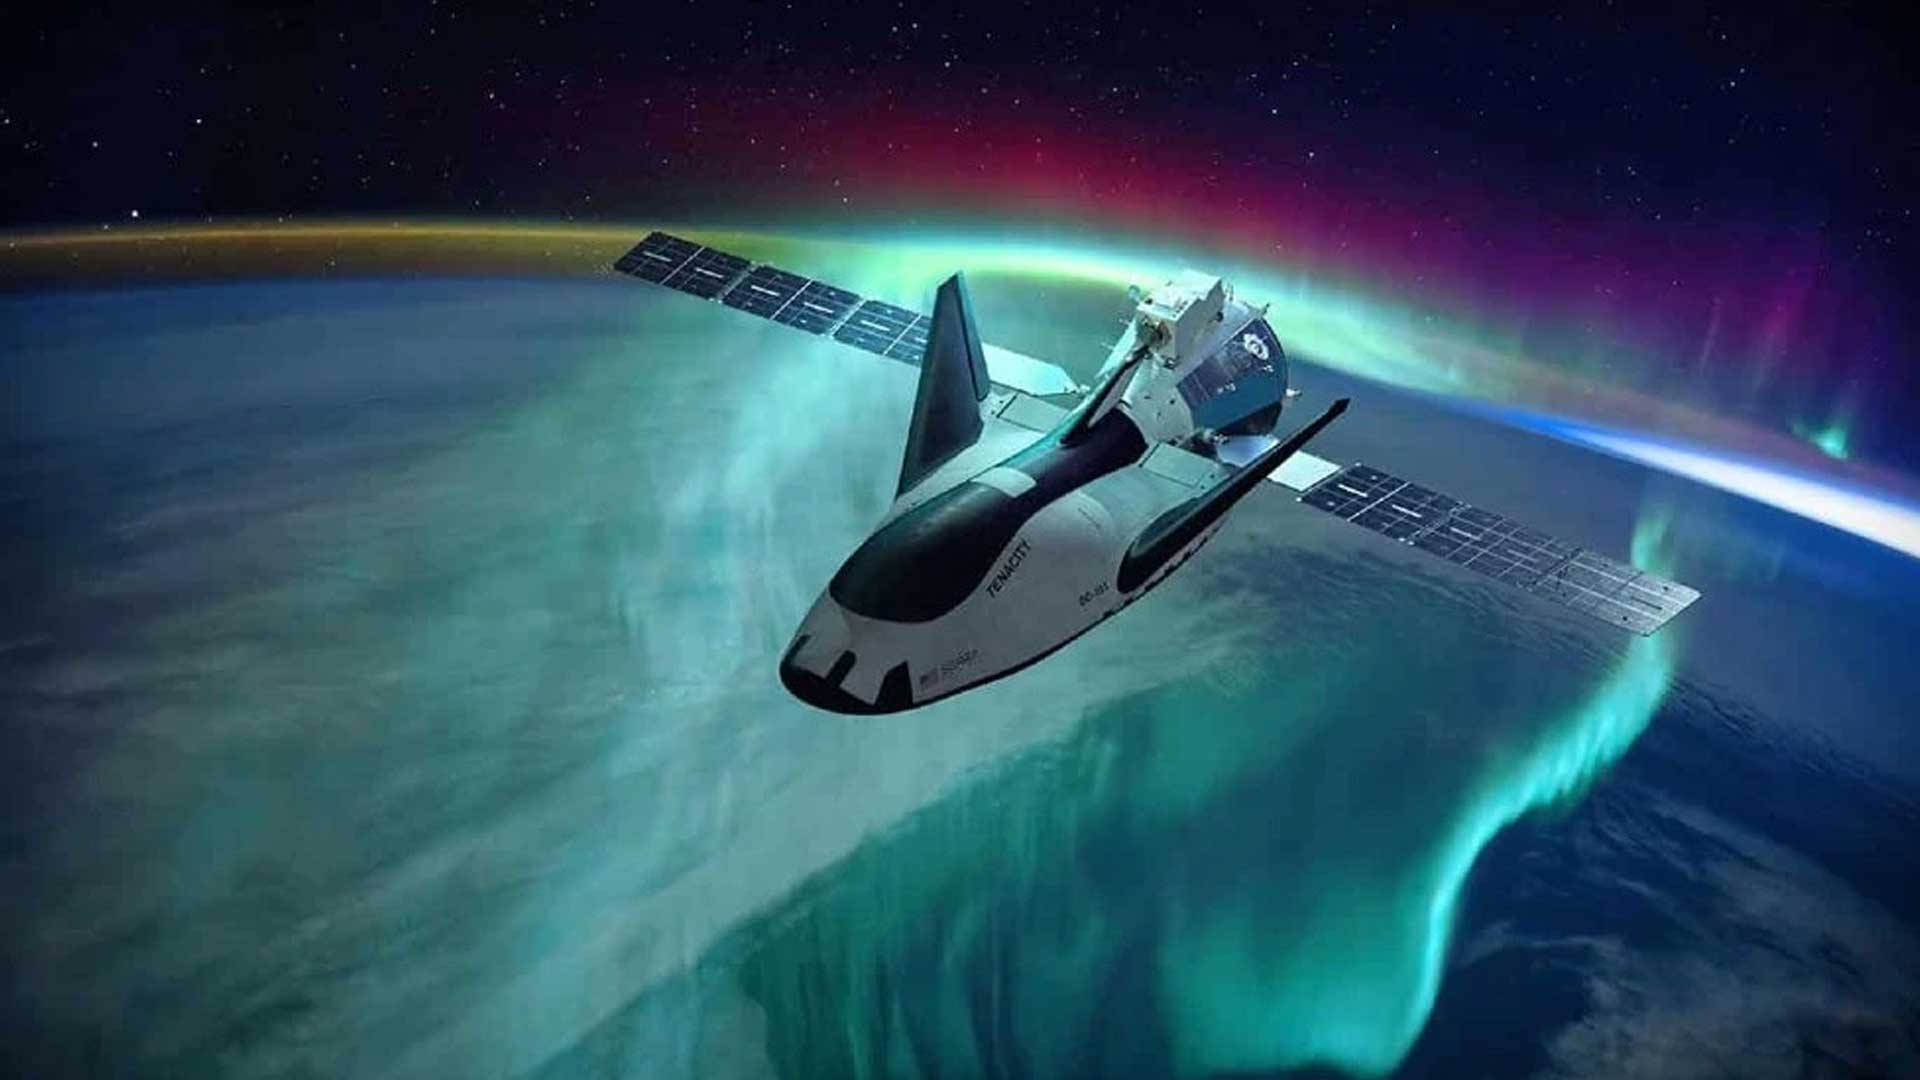 spazioplano-dream-chaser-corsa-allo-spazio-Robb-Report-Italia